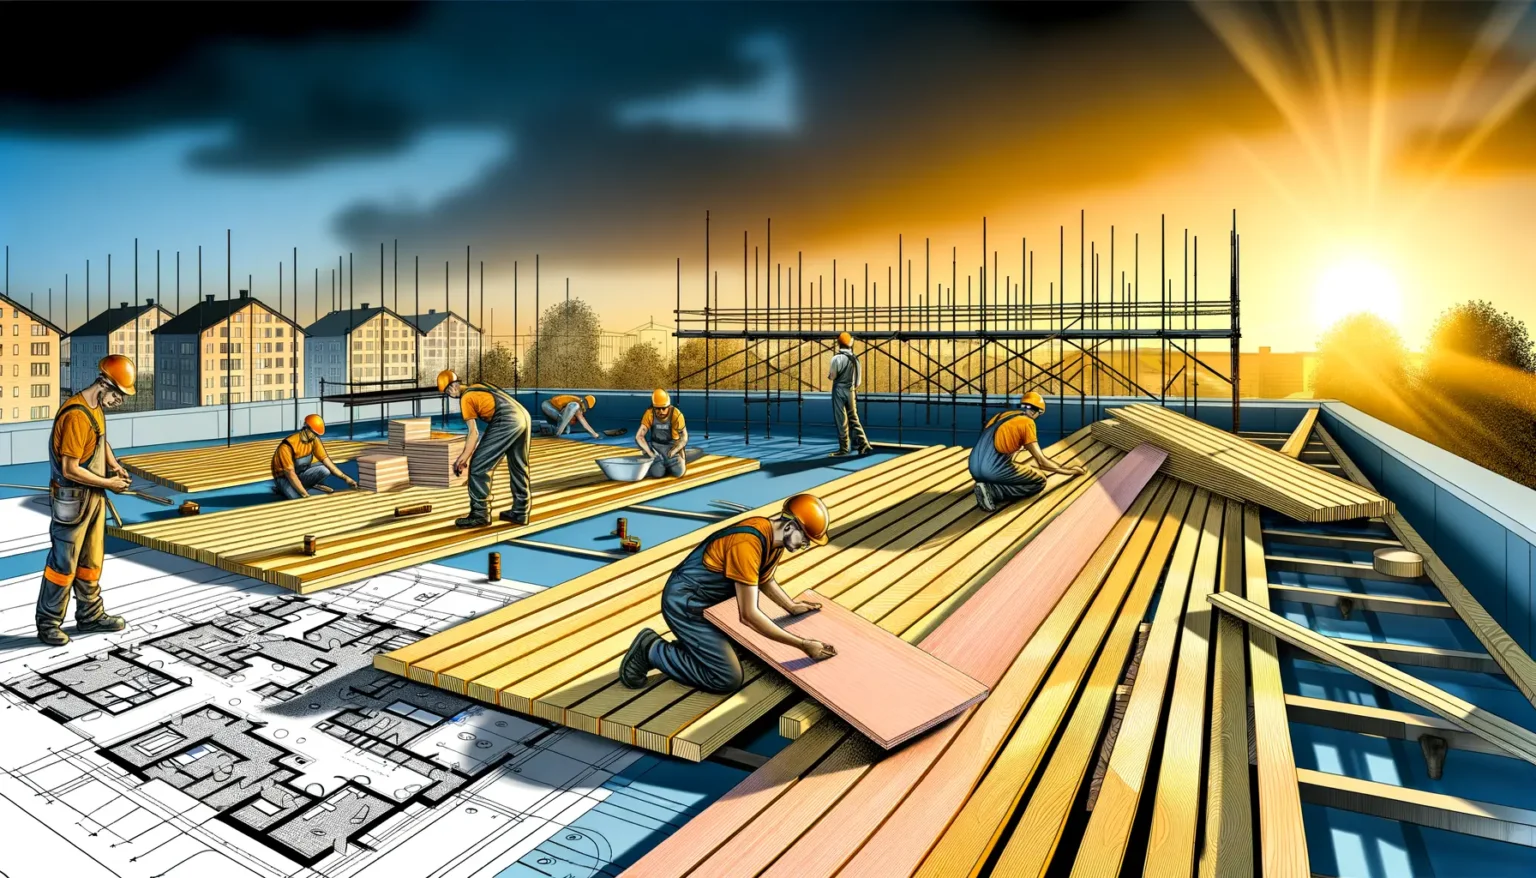 Illustration eines geschäftigen Baustellen-Arbeitsbereichs mit Arbeitern, die unter einem strahlenden Sonnenuntergang auf einem Dachkonstrukt tätig sind. Sie tragen Sicherheitskleidung und Helme, während sie Holzbretter verlegen und Baupläne überblicken, die im Vordergrund zu sehen sind. Scaffolding und Stadtsilhouette im Hintergrund.